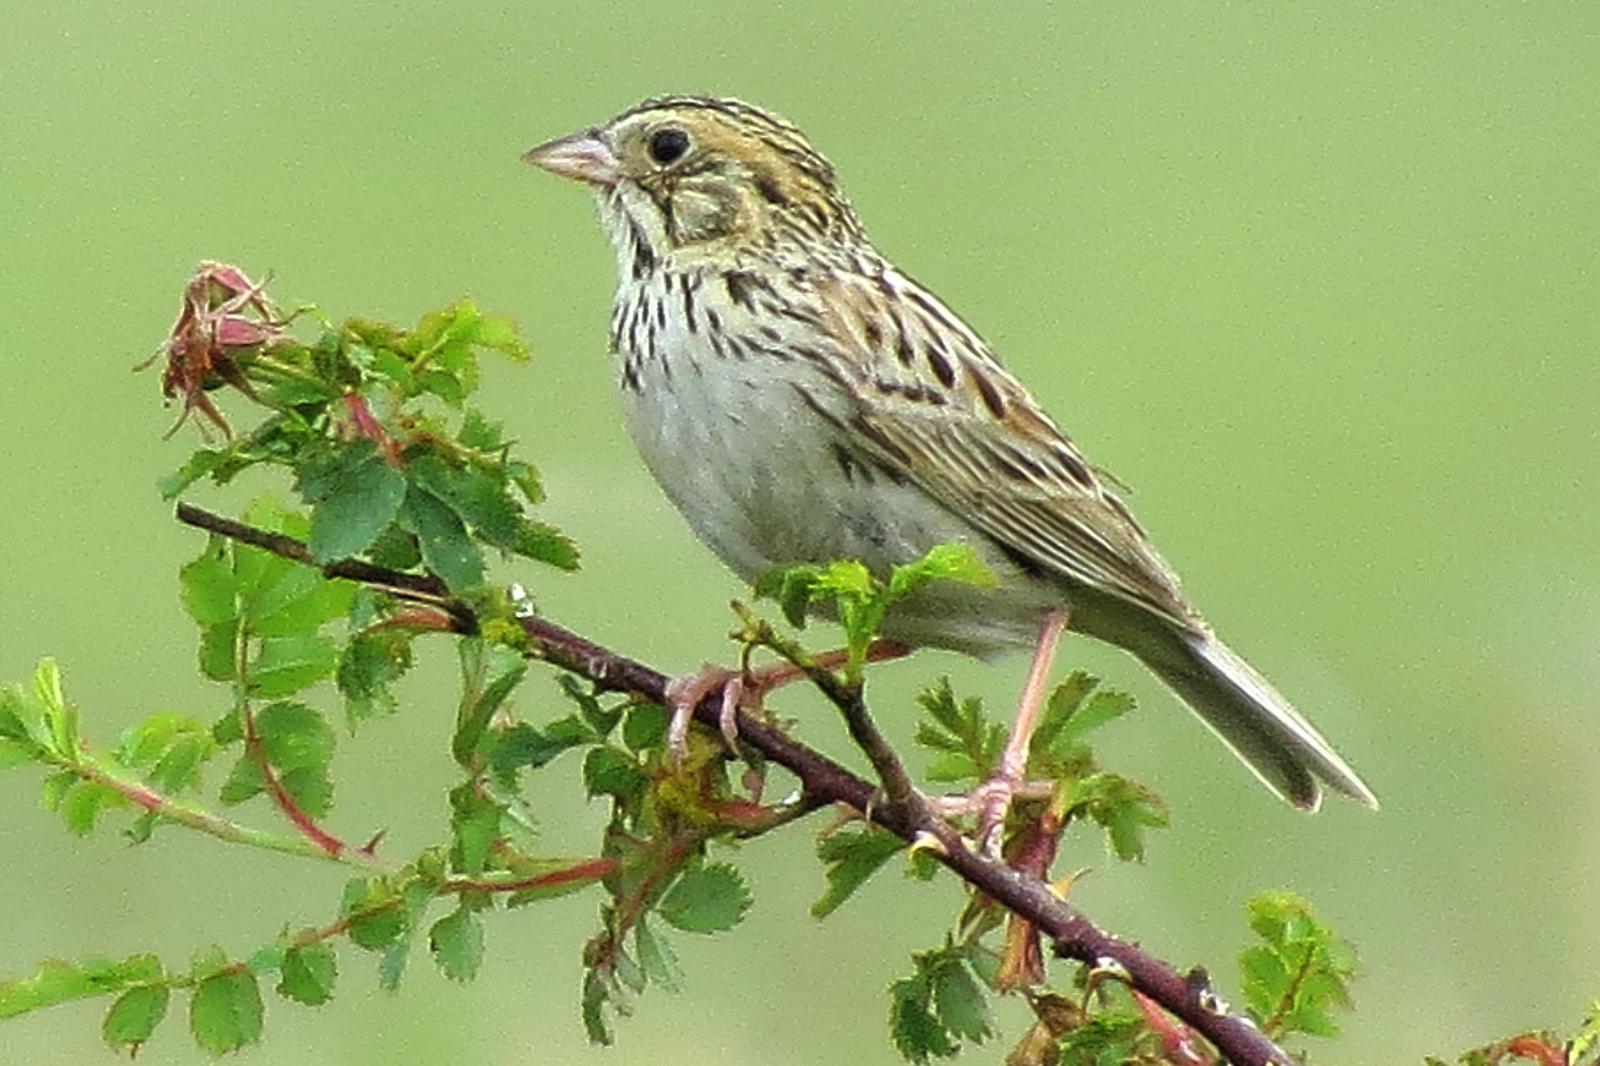 Baird's Sparrow Photo by Enid Bachman